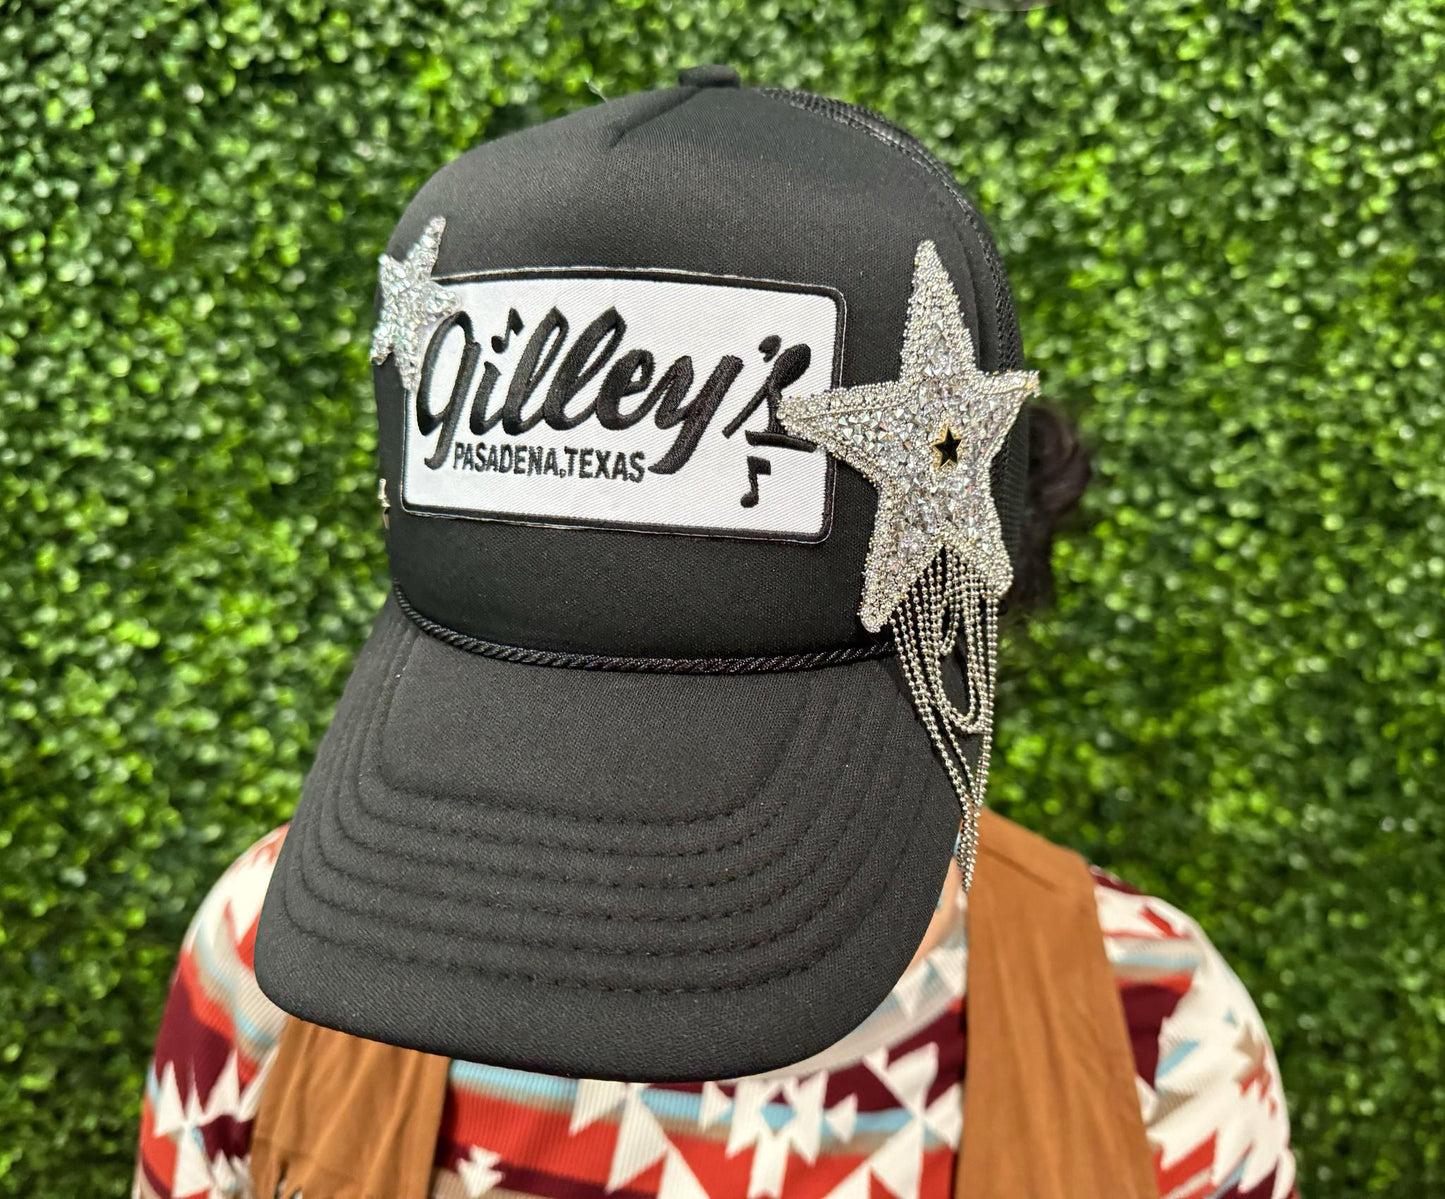 Star Fringe Black Gilley's Trucker Hat